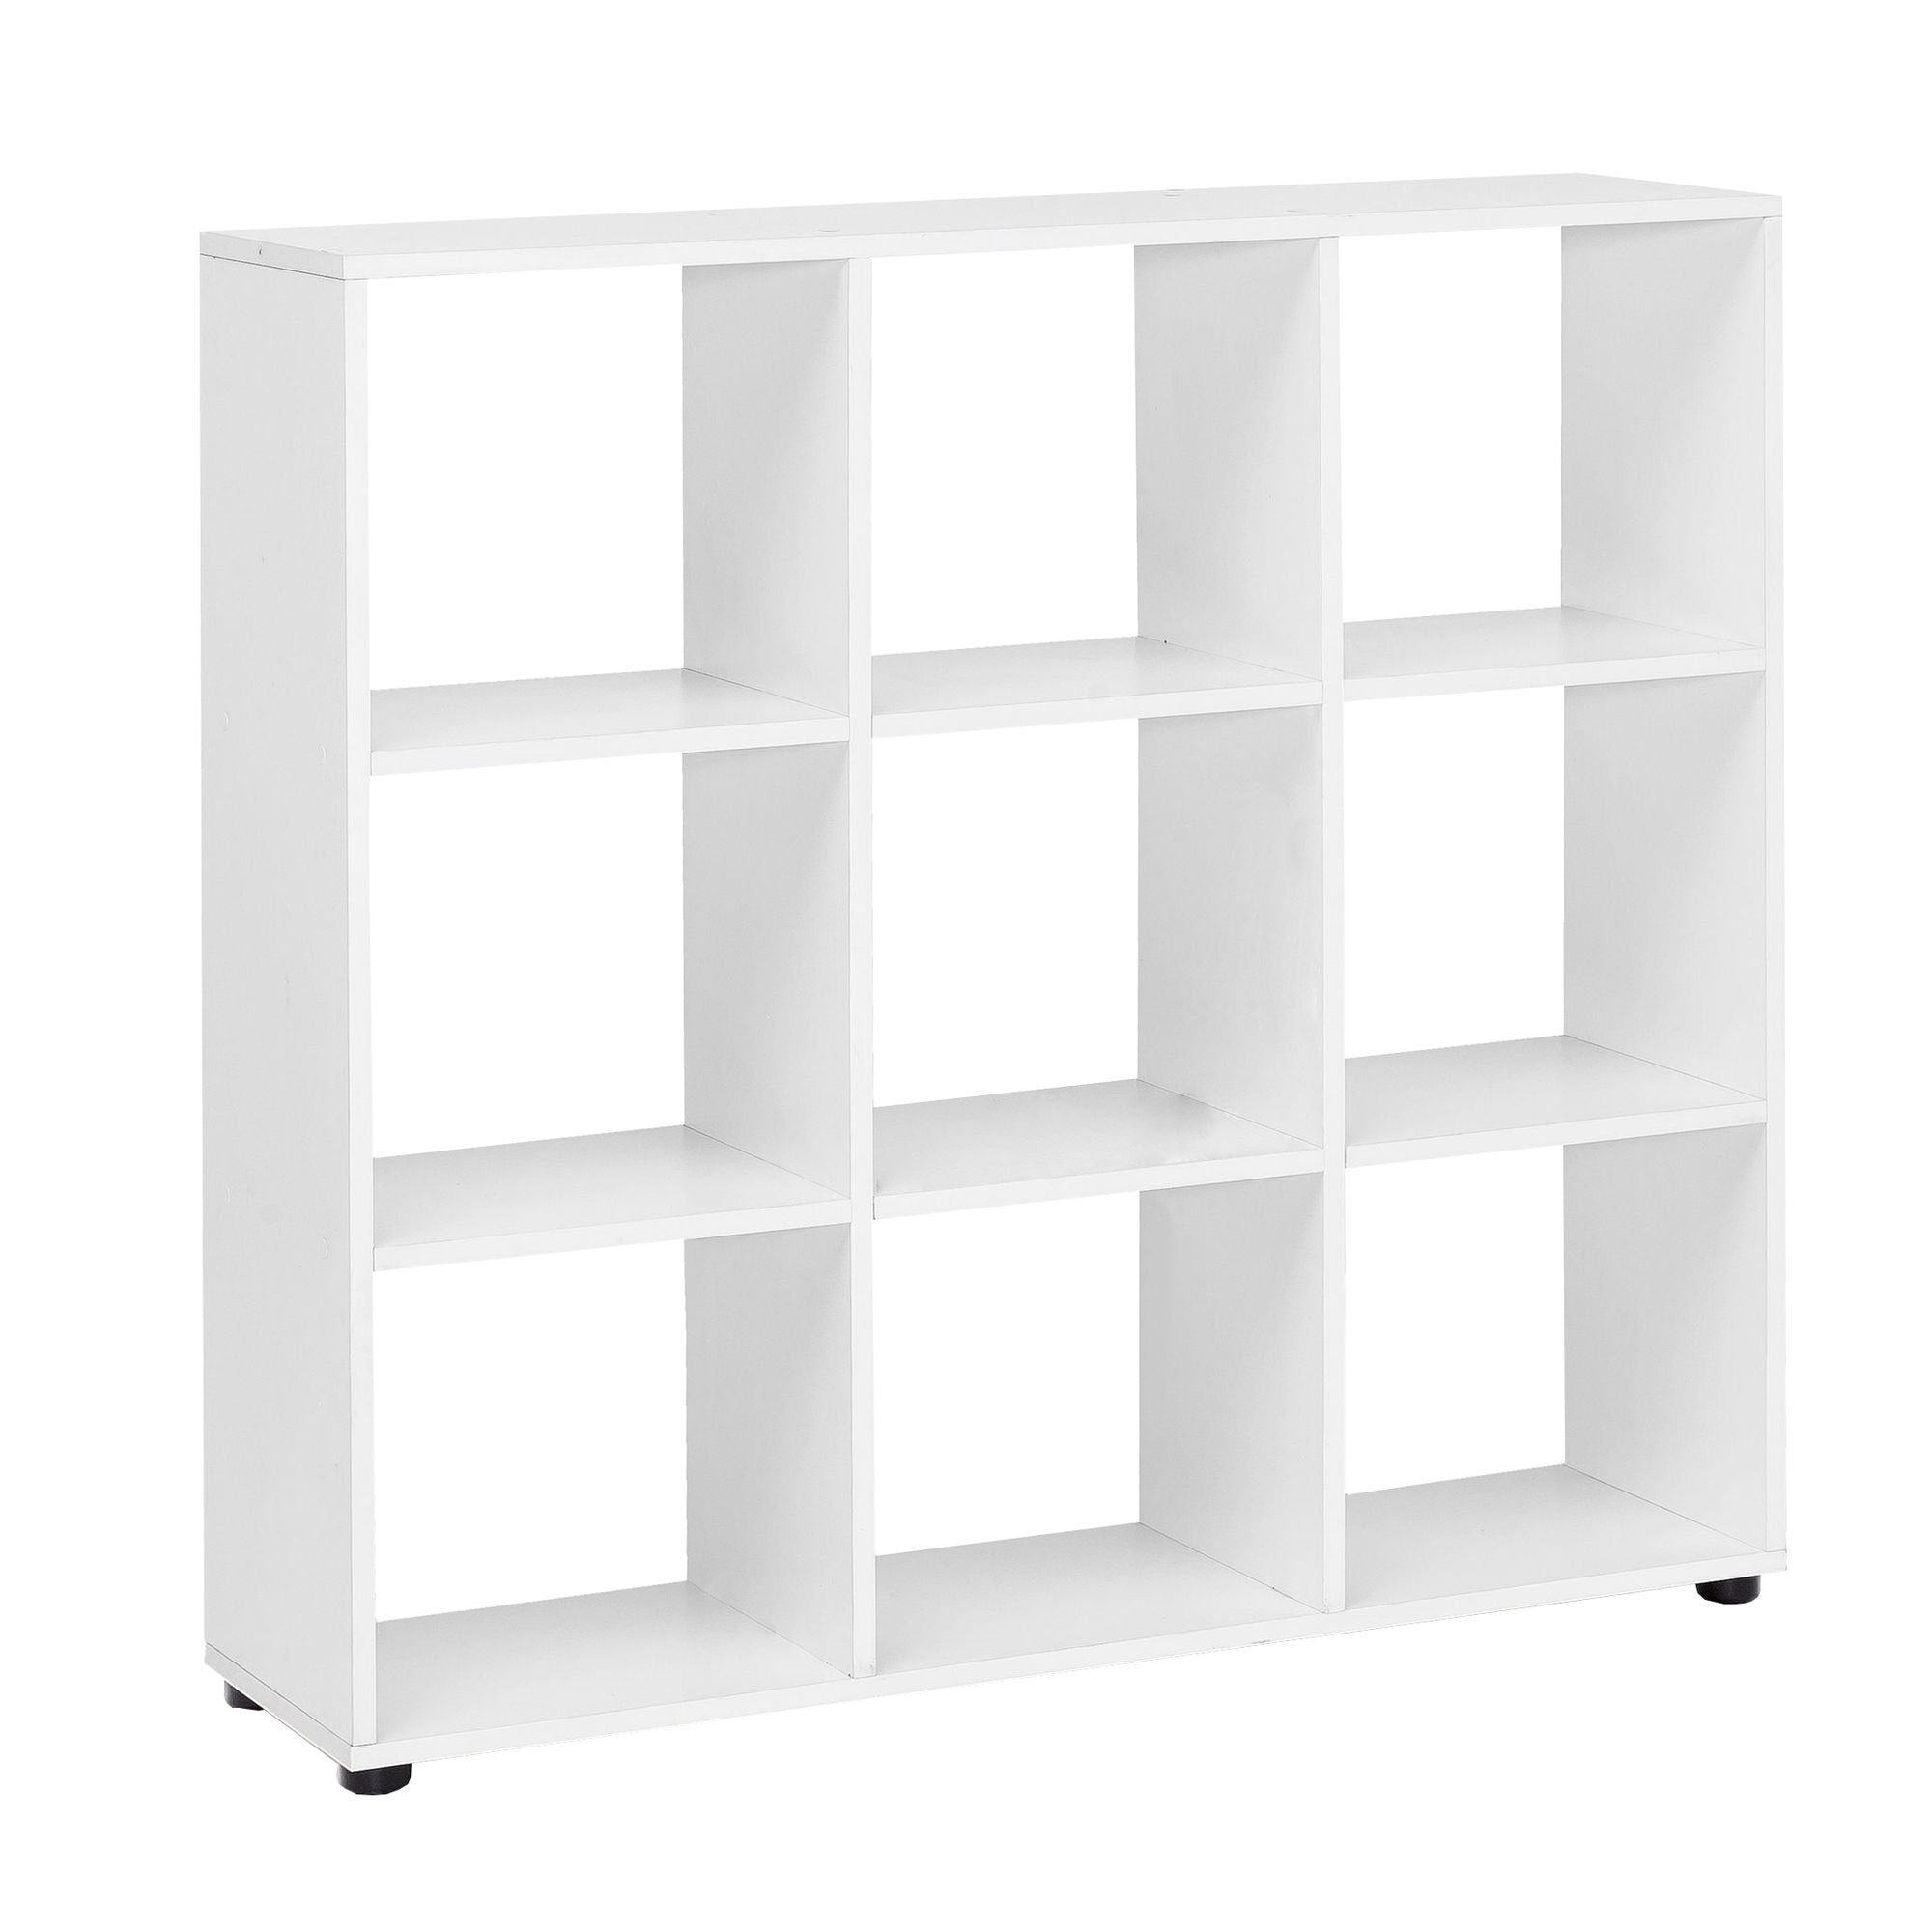 FINEBUY Standregal SuVa11686_1, mit 4 Fächern Weiß 108 x 104 x 29 cm, Bücherregal, Raumteiler Quadratisch, Würfelregal Modern | Standregale